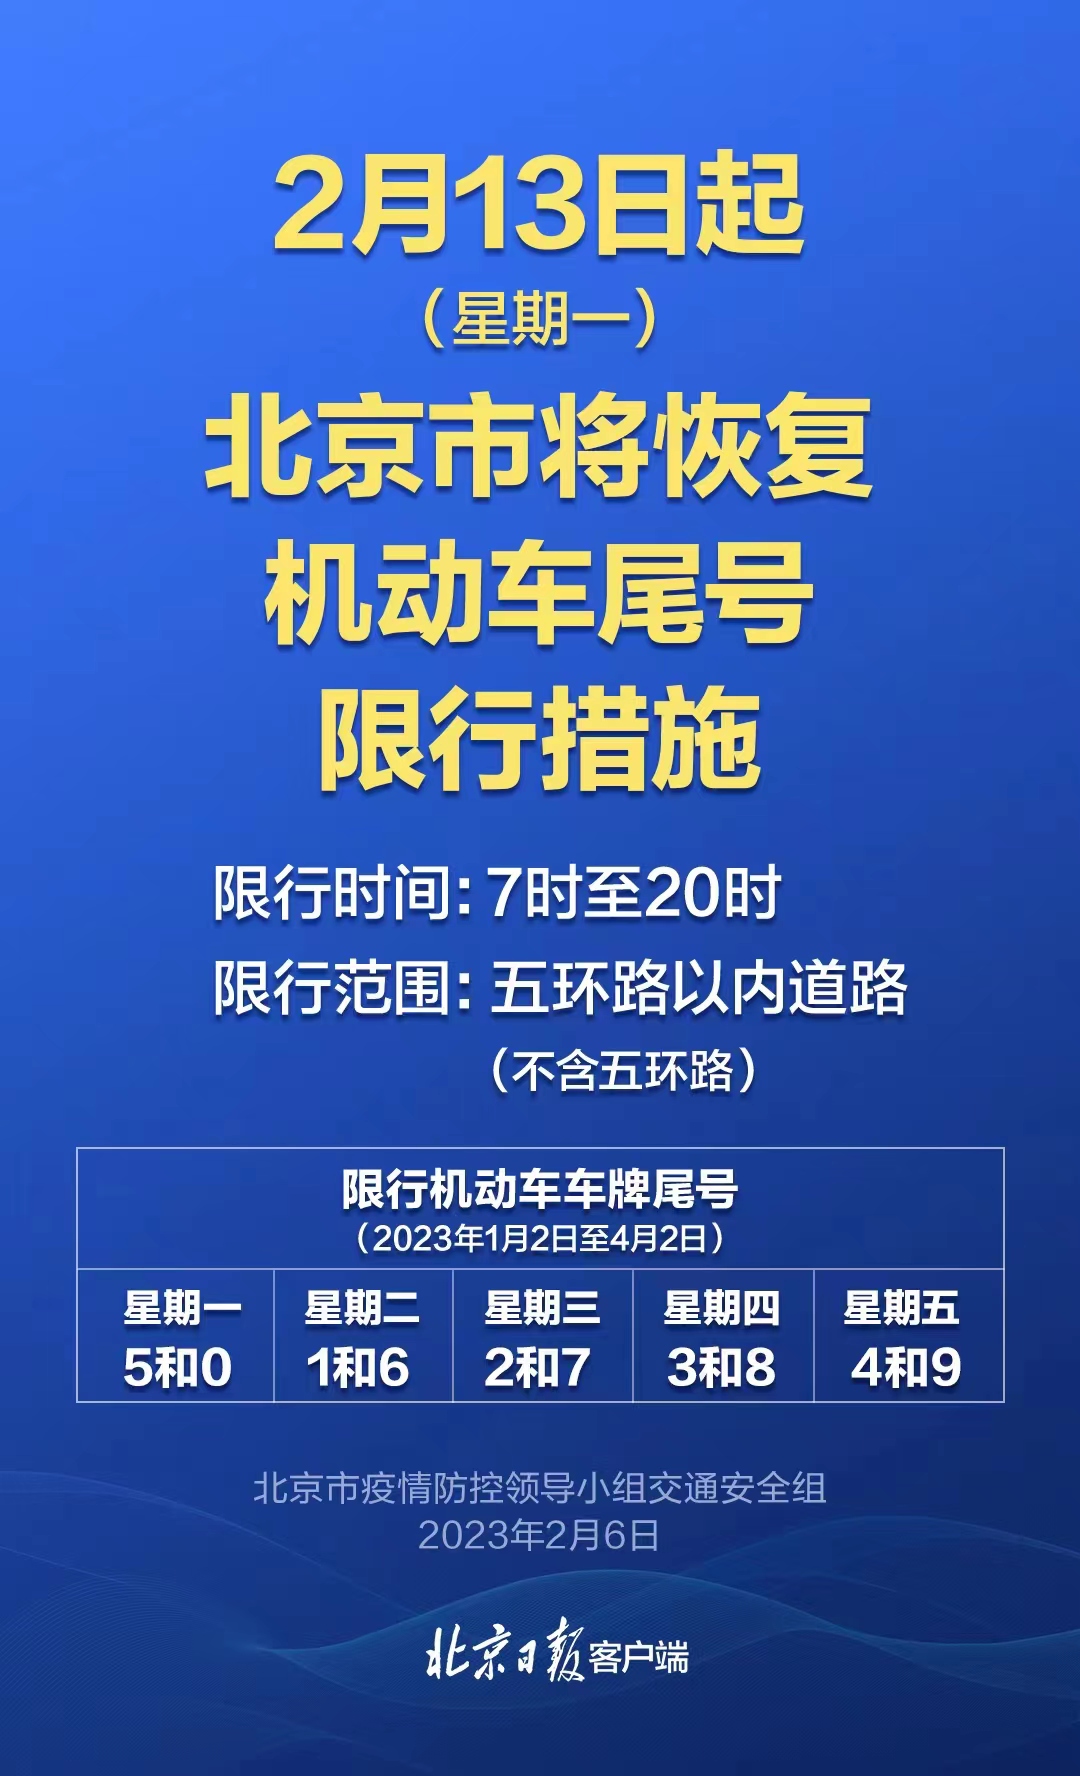 7月5日起，北京尾号限行轮换 - 汽车 - 大众新闻网—大众生活报官网